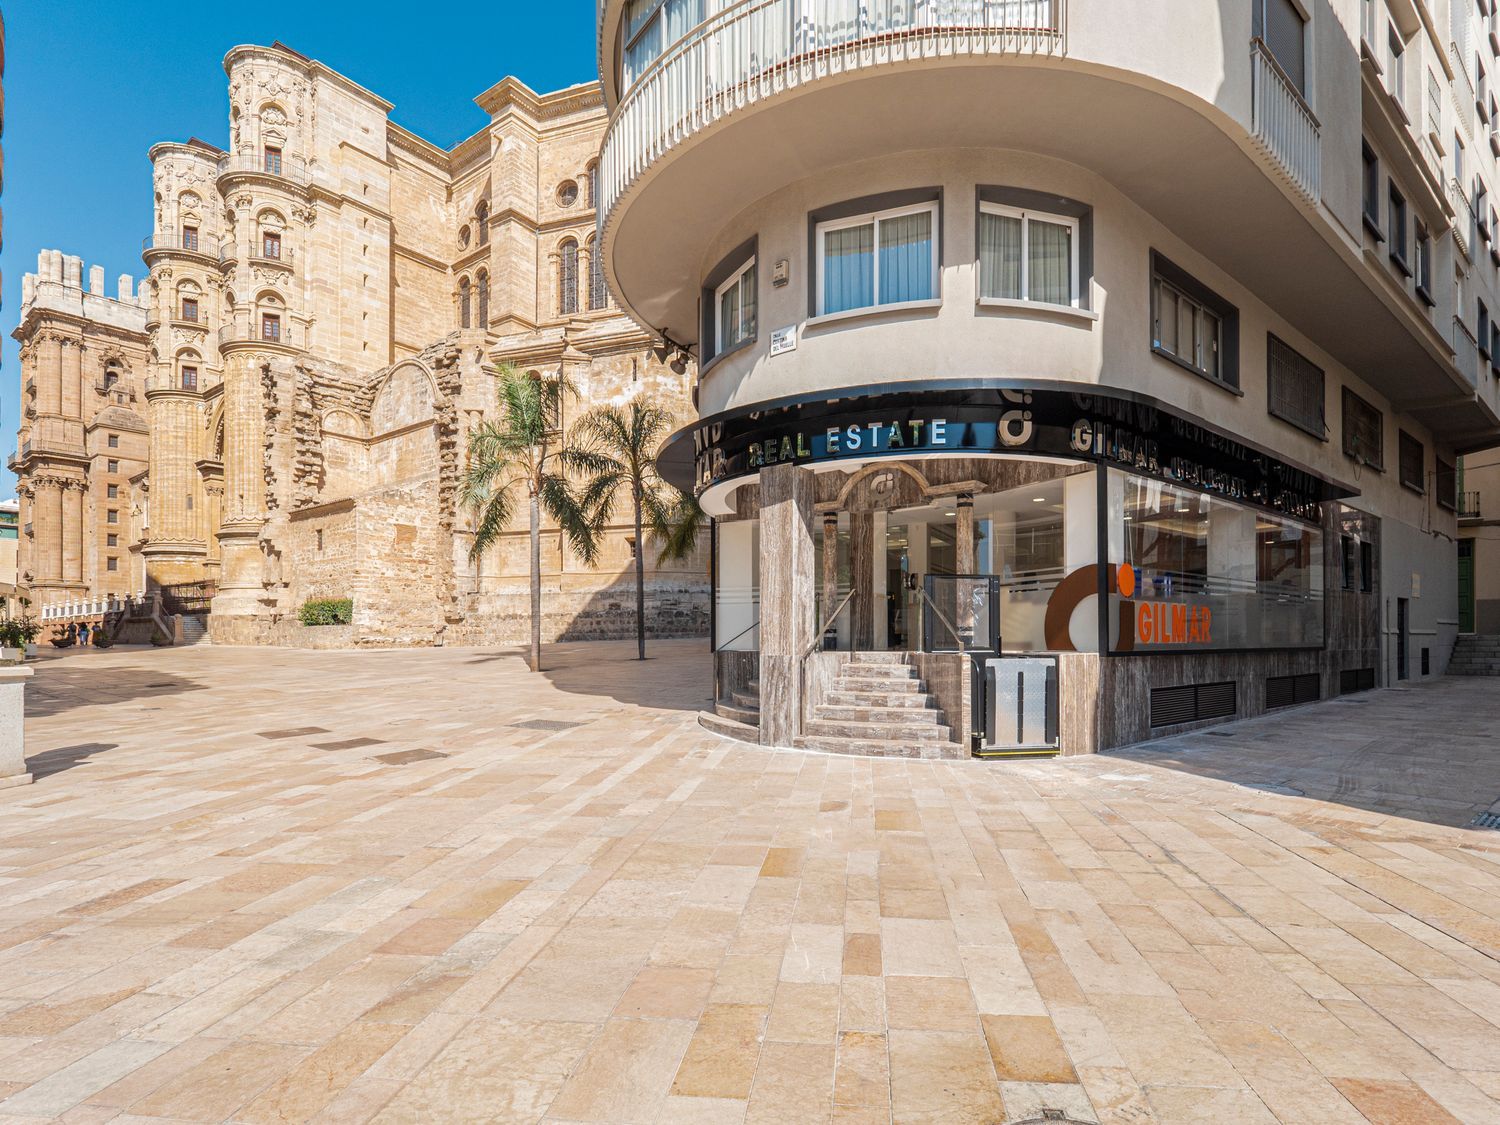 Portal Inmobiliario de Lujo en Conde de Ureña, presenta chalet de lujo venta en Málaga, casa premium para comprar y vivienda independiente en venta en Centro de Málaga.